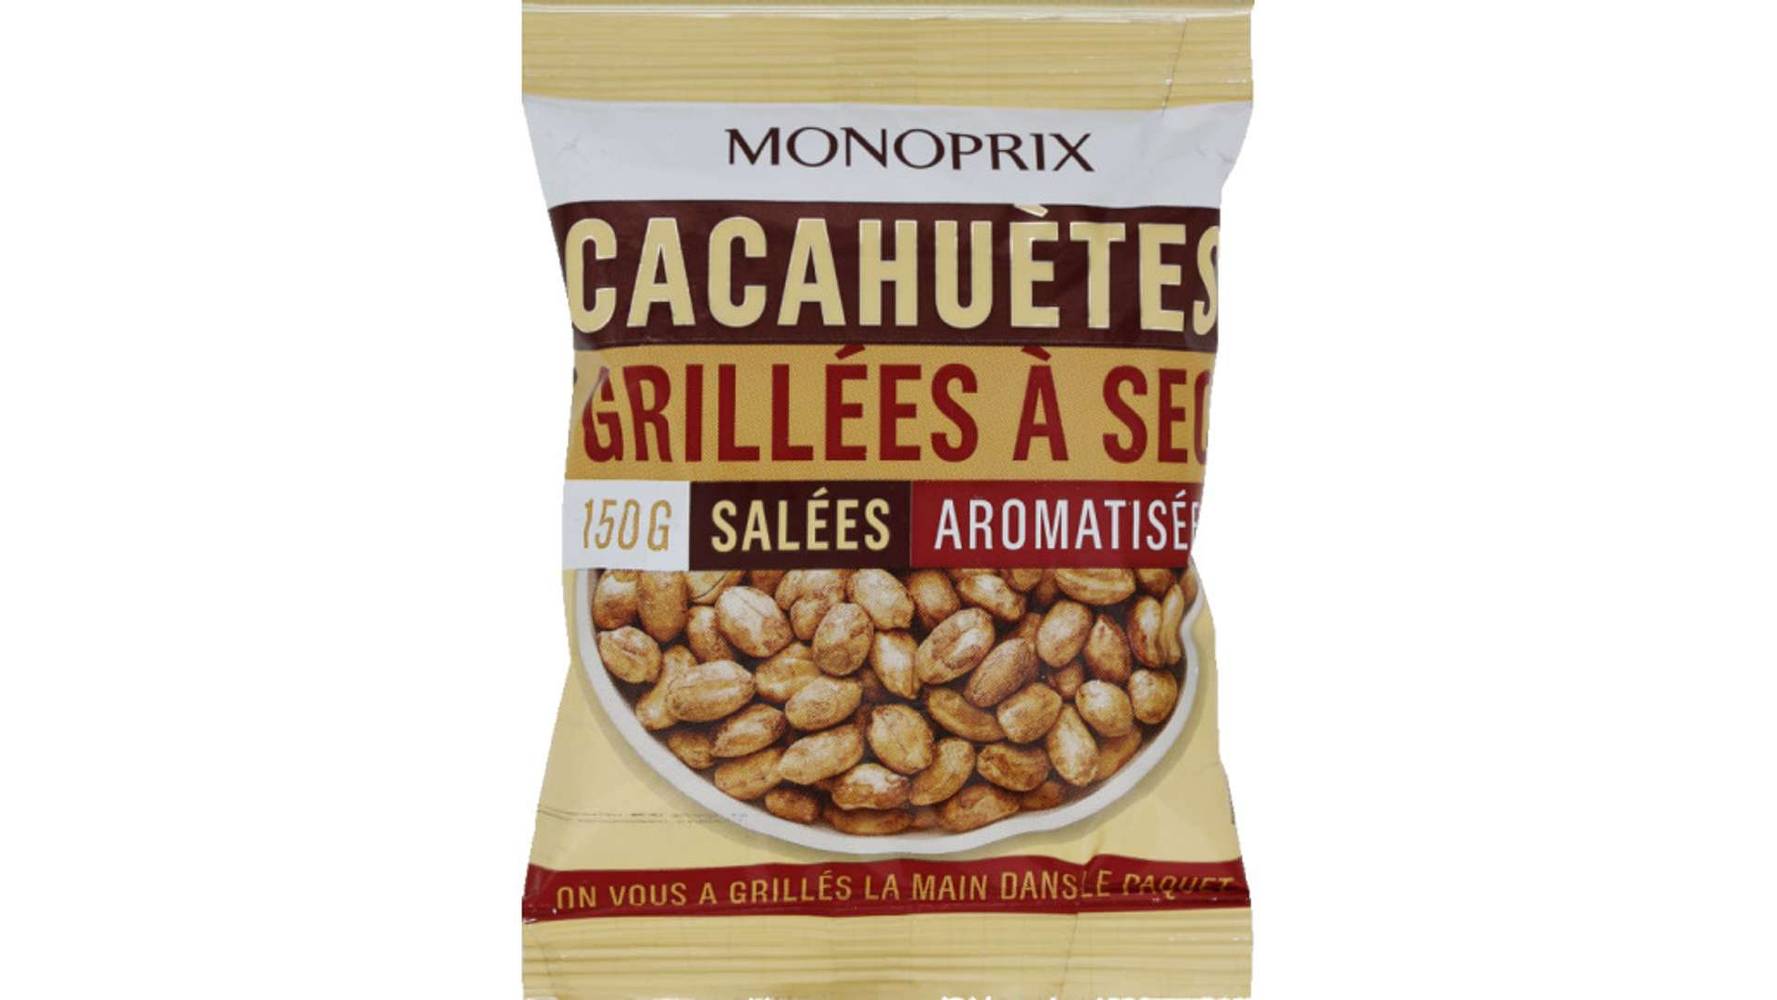 Monoprix - Cacahuètes grillées à sec (salées)